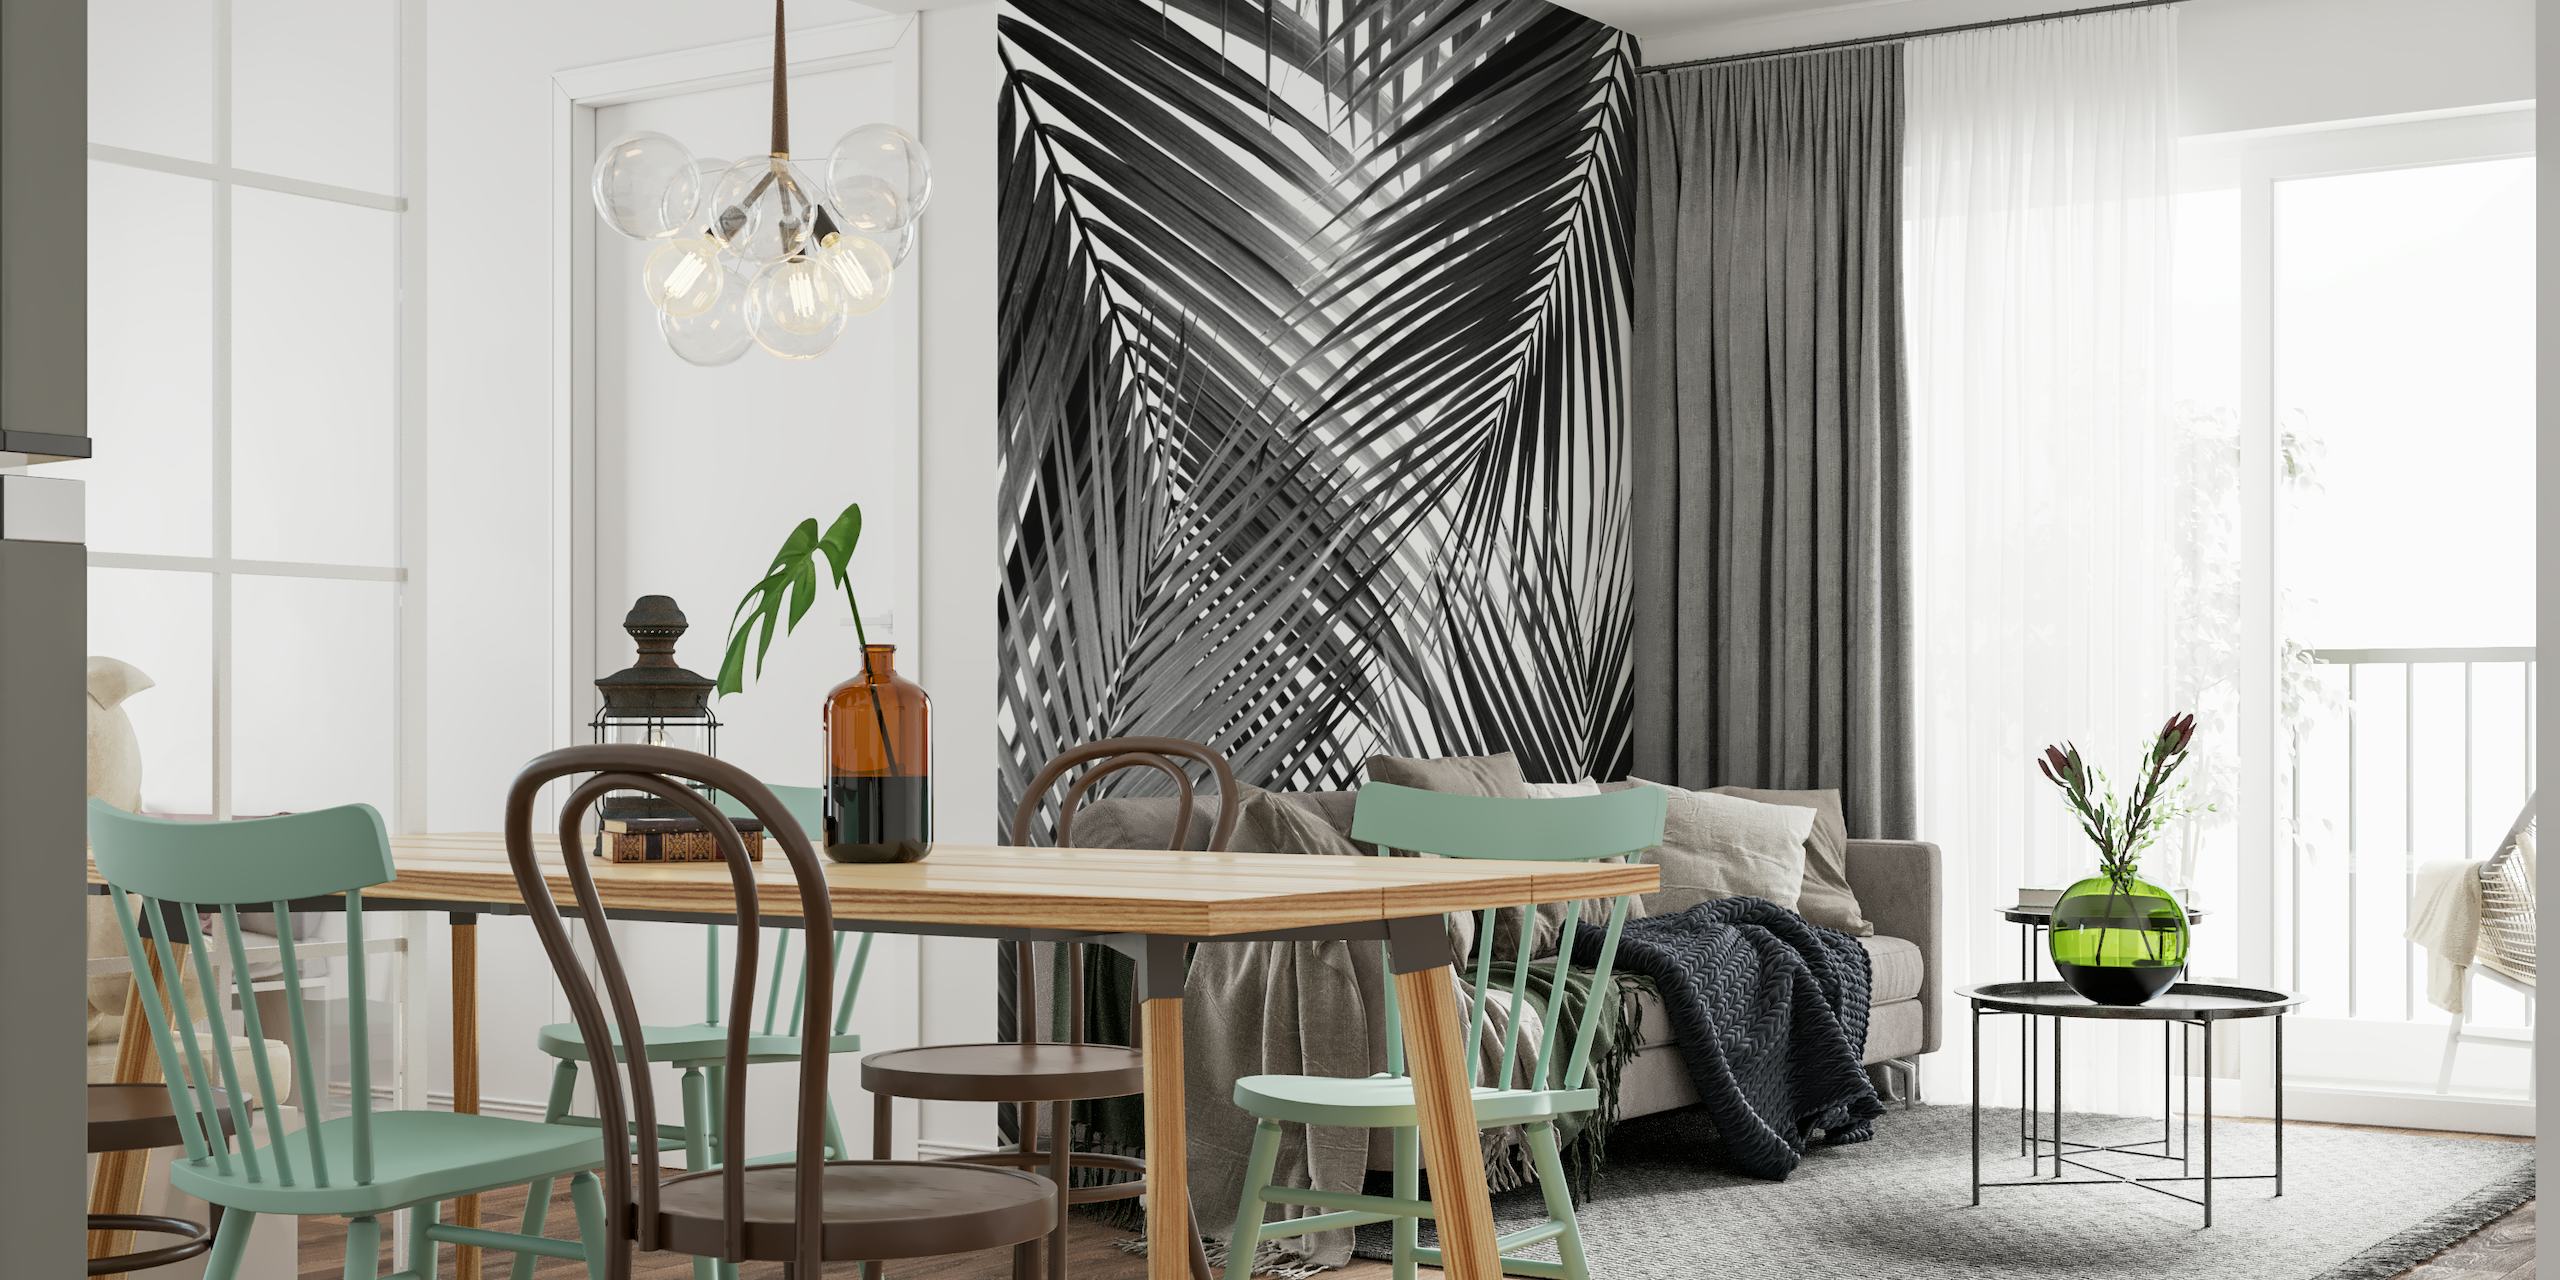 Zwart-witte muurschildering van abstract palmbladerenontwerp